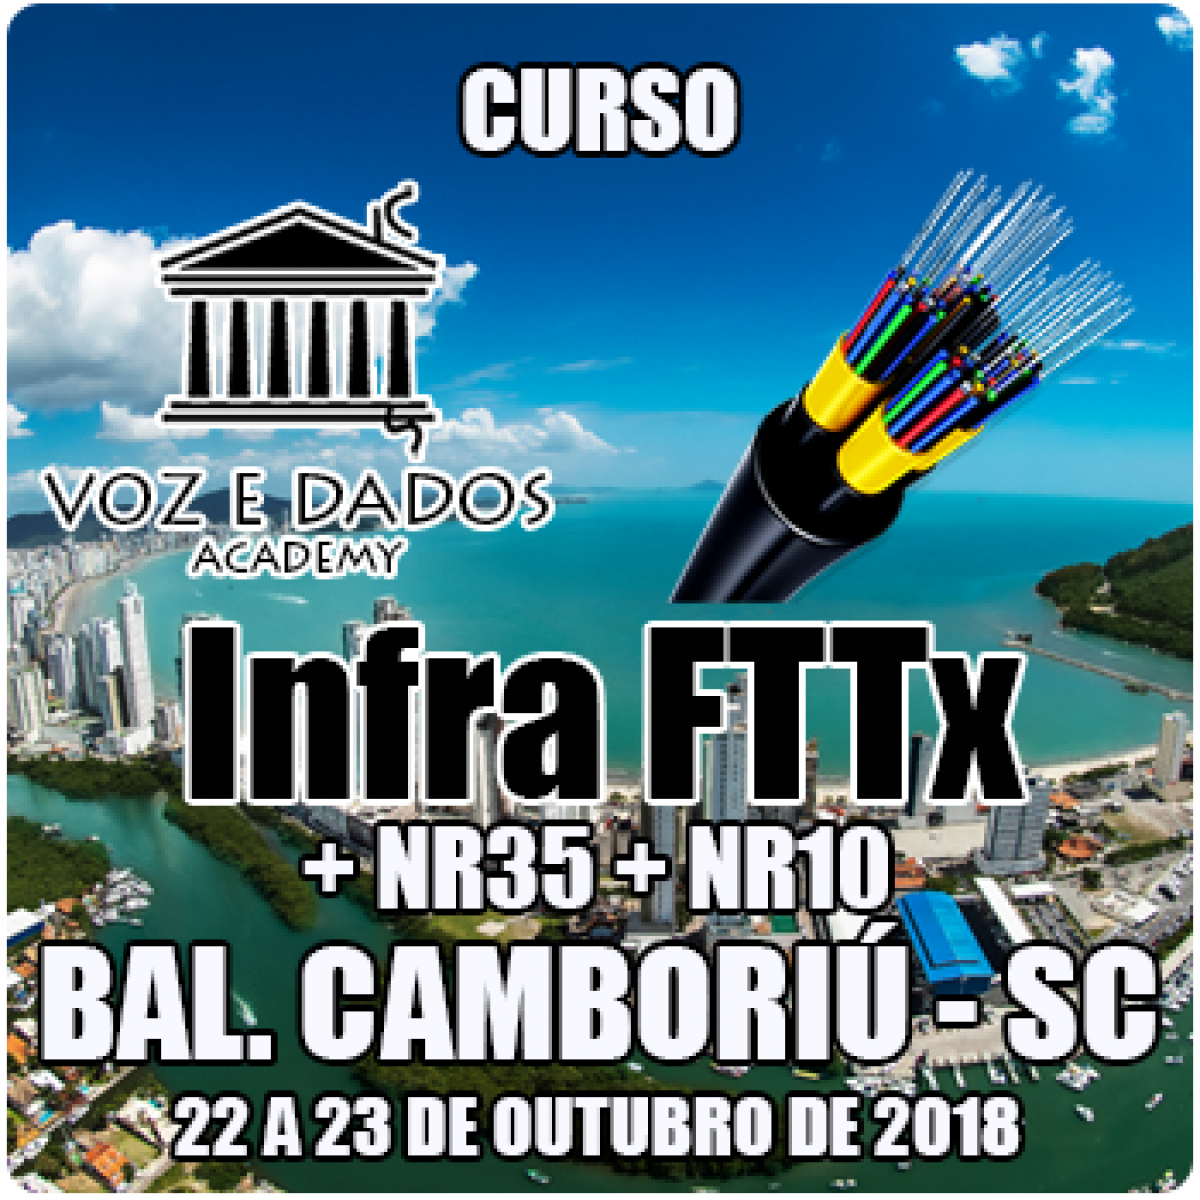 CURSO INFRA FTTX + NR35 + NR10